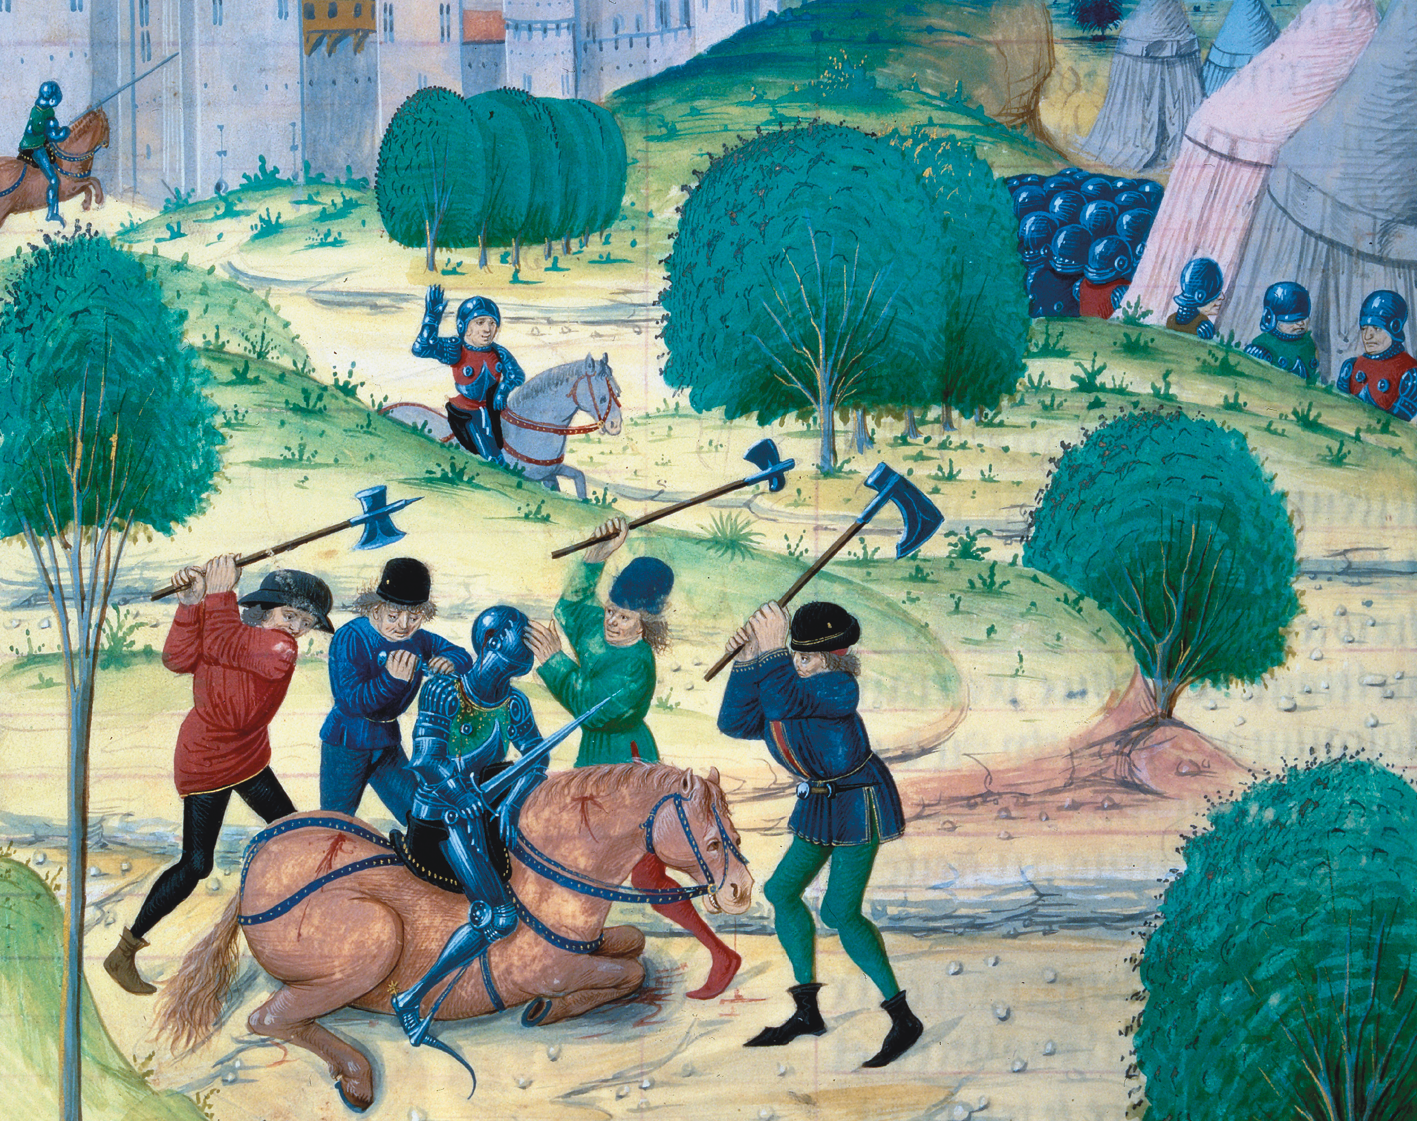 Iluminura. Em primeiro plano, pessoas com machados nas mãos atacando um cavaleiro de armadura que está em cima de um cavalo. O cavalo está machucado. Ao fundo, à esquerda, as muralhas de um castelo e, à direita, outros cavaleiros em meio a árvores e tendas.